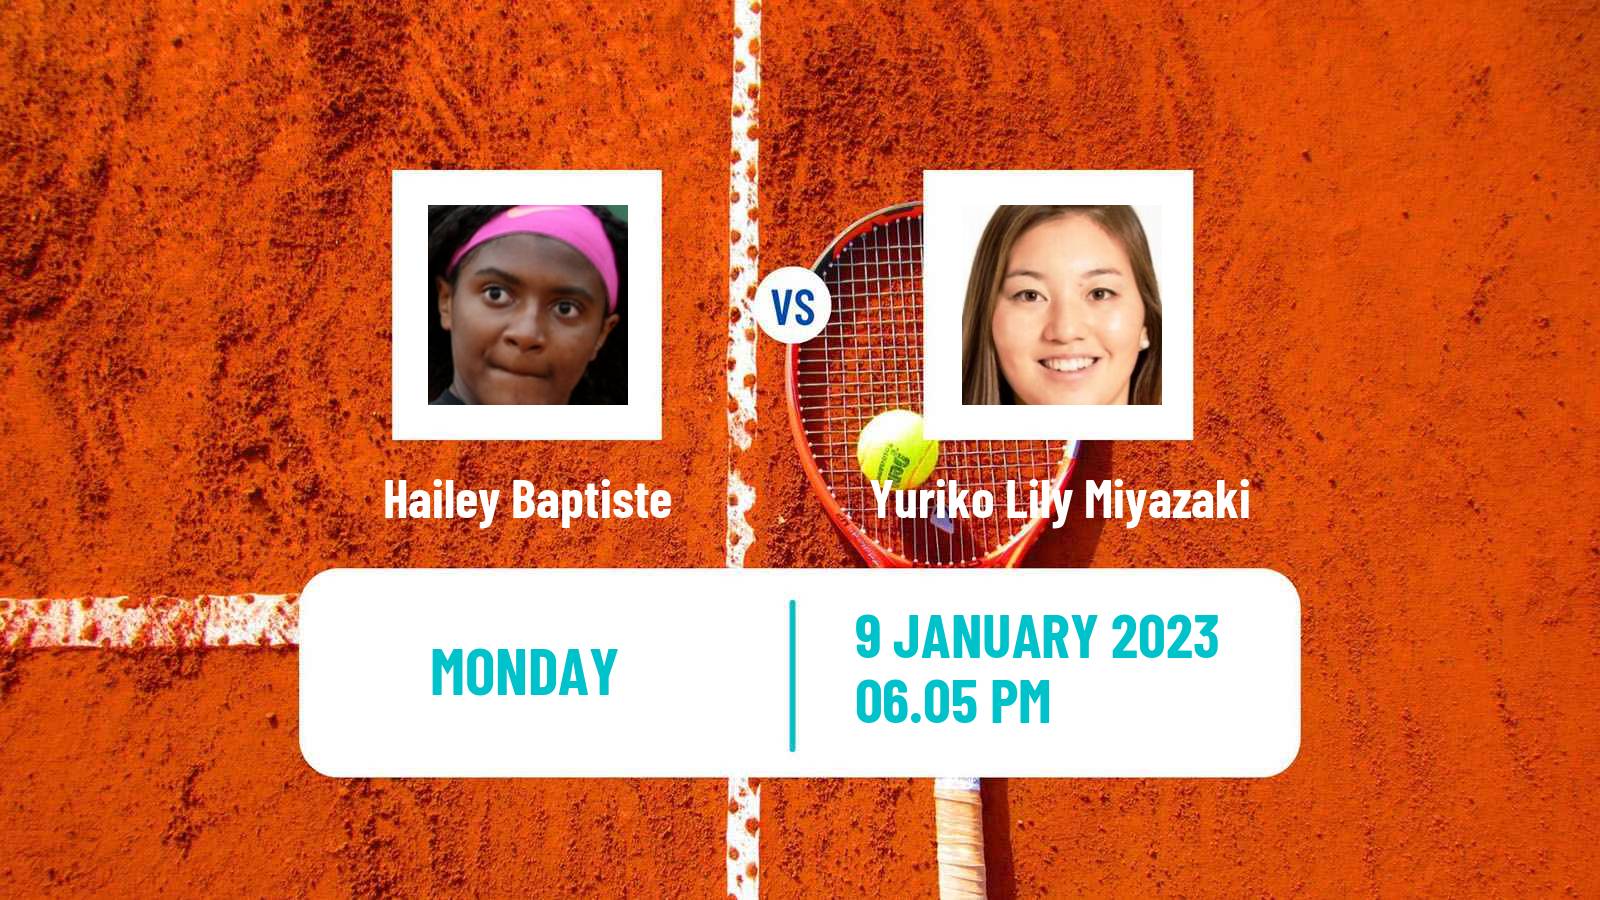 Tennis WTA Australian Open Hailey Baptiste - Yuriko Lily Miyazaki